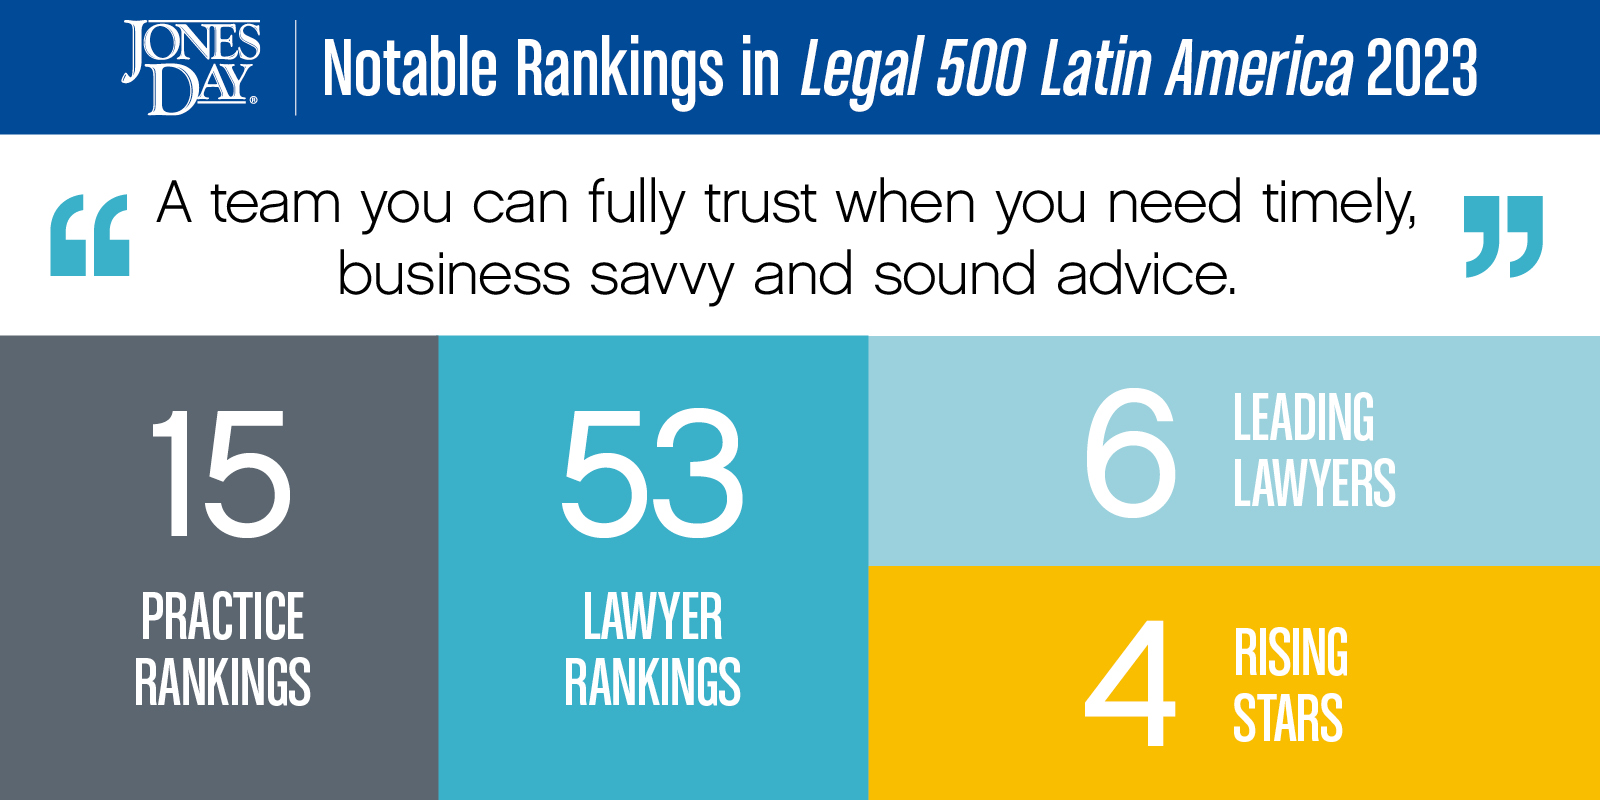 Legal 500 LatAm Infographic_2023